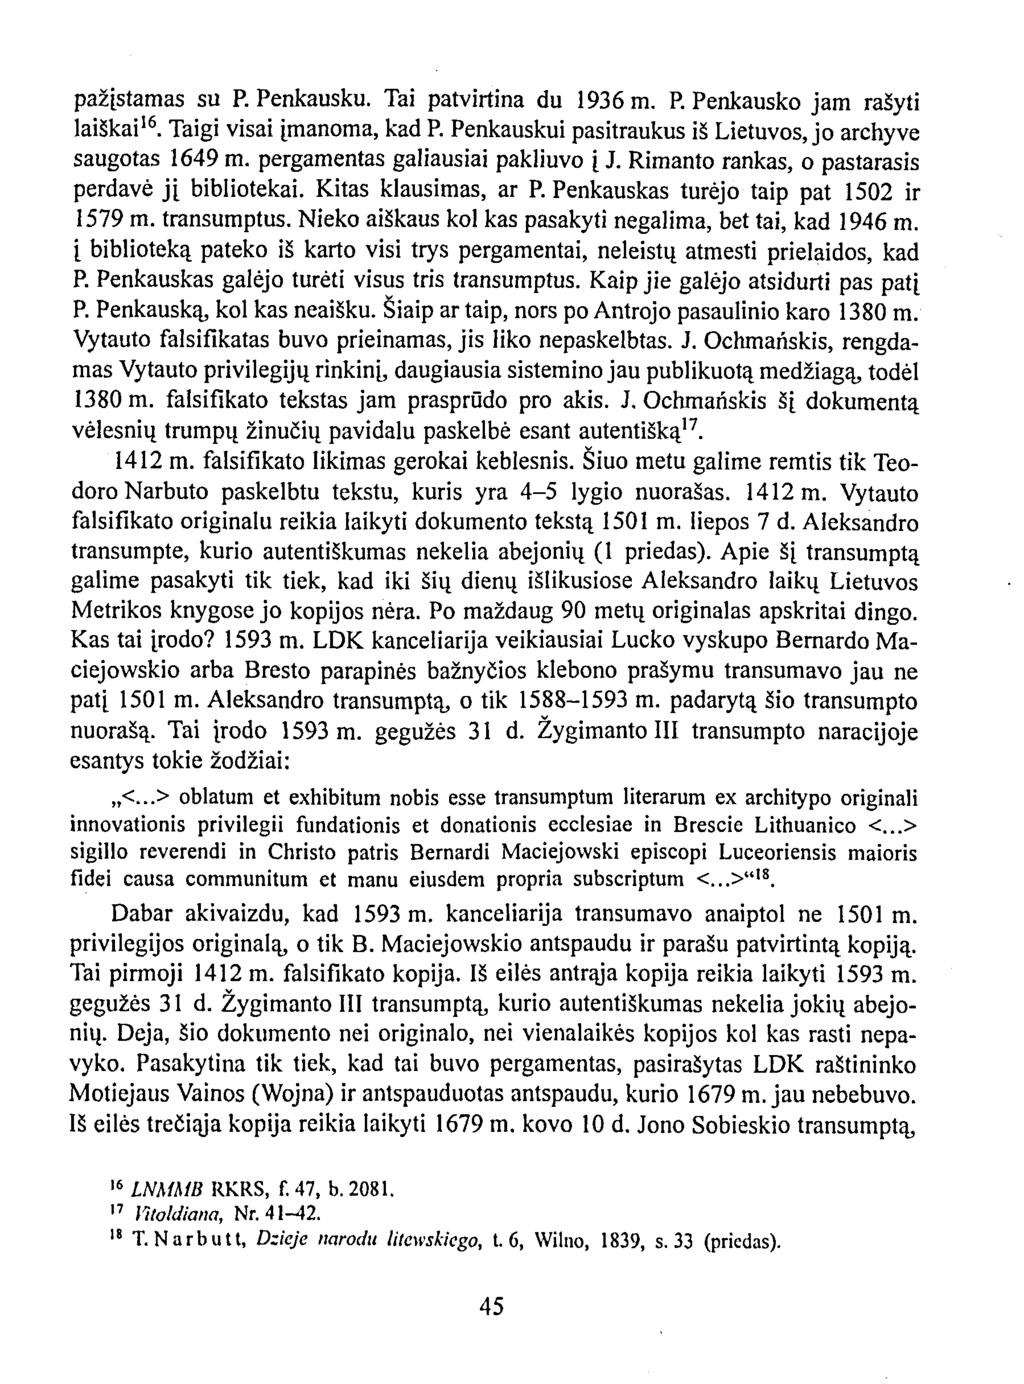 pažįstamas su P. Penkausku. Tai patvirtina du 1936 m. P. Penkausko jam rašyti laiškai 16. Taigi visai įmanoma, kad P. Penkauskui pasitraukus iš Lietuvos, jo archyve saugotas 1649 m.